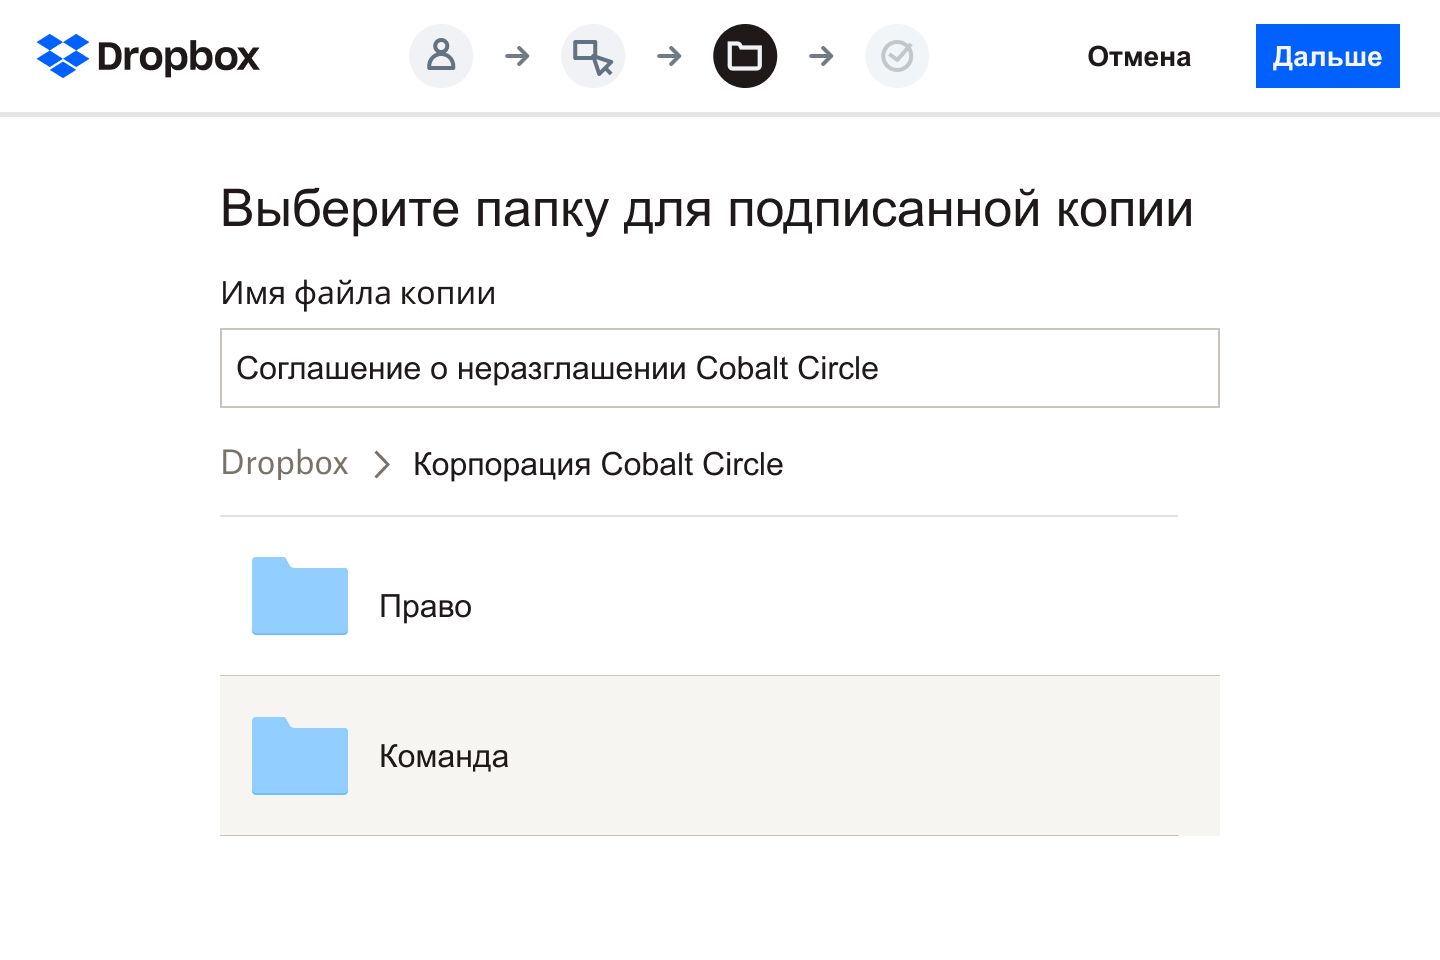 Пользователь выбирает папку в Dropbox, где будет храниться цифровая версия подписанного соглашения о неразглашении